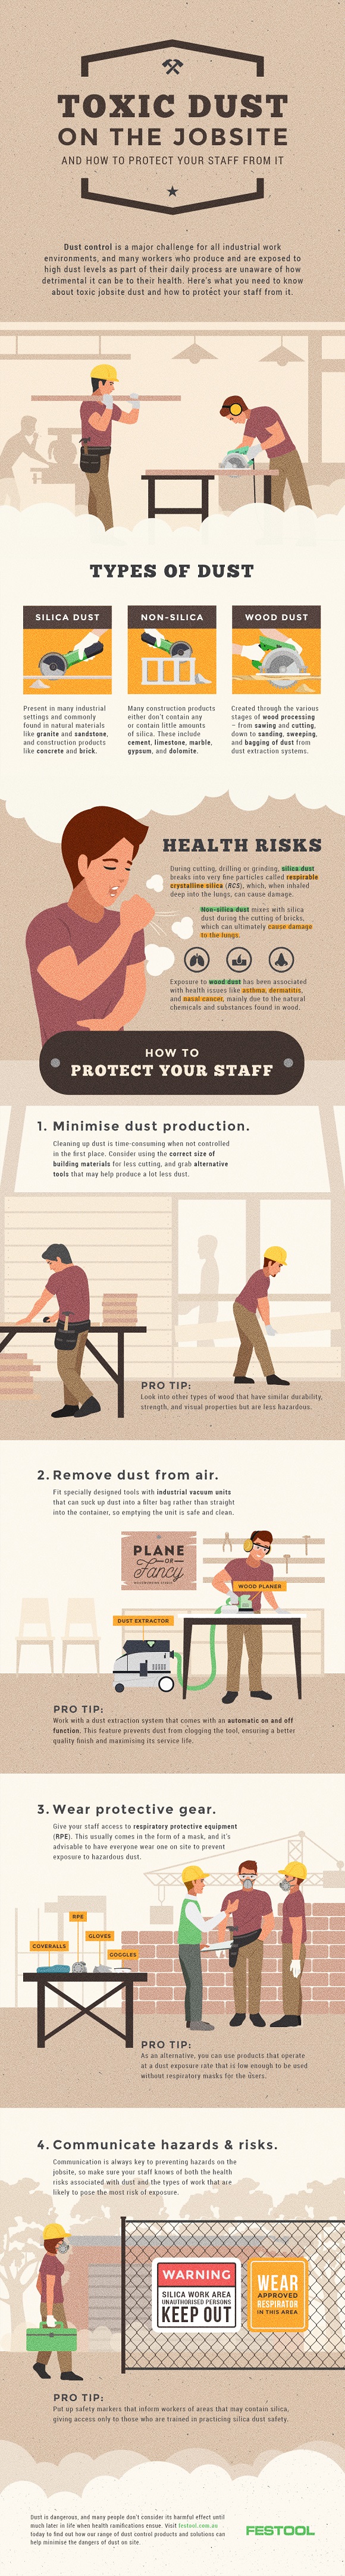 job site toxic dust infographic